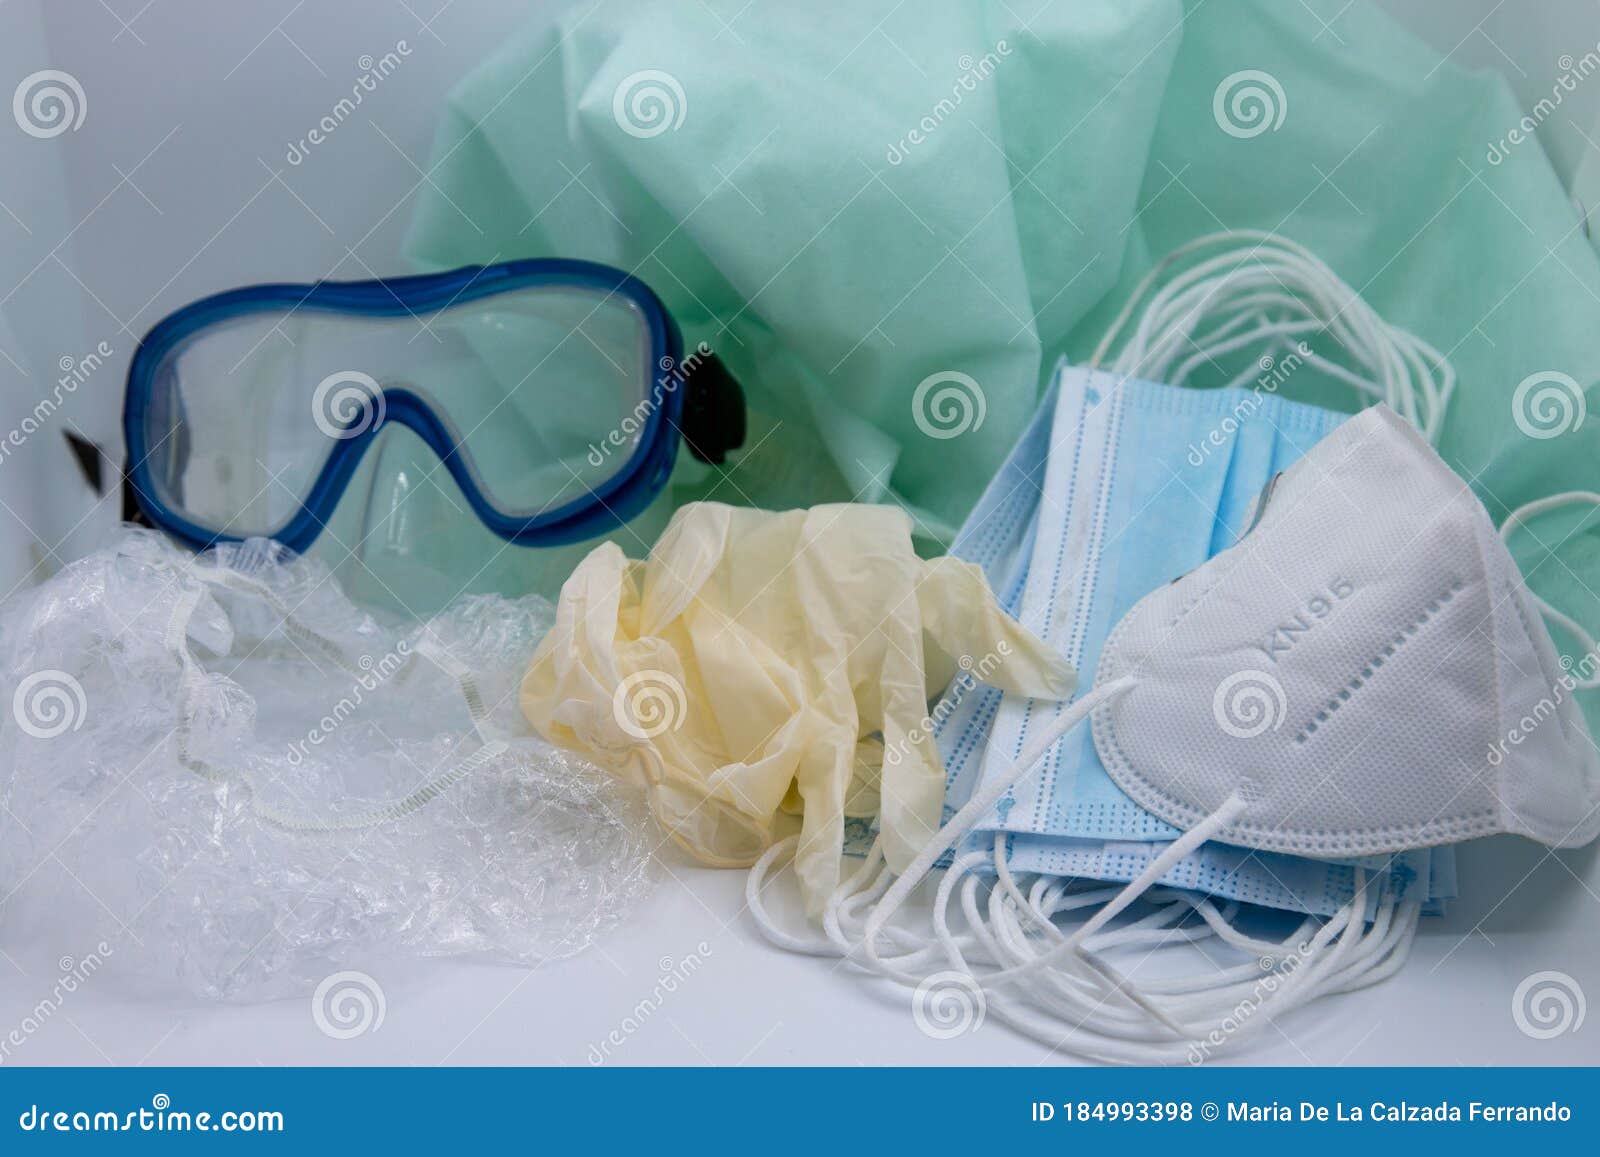 os de protecciÃÂ³n guantes, gafas, mascarillas, gorro quirÃÂºrgicos para medicos y personas